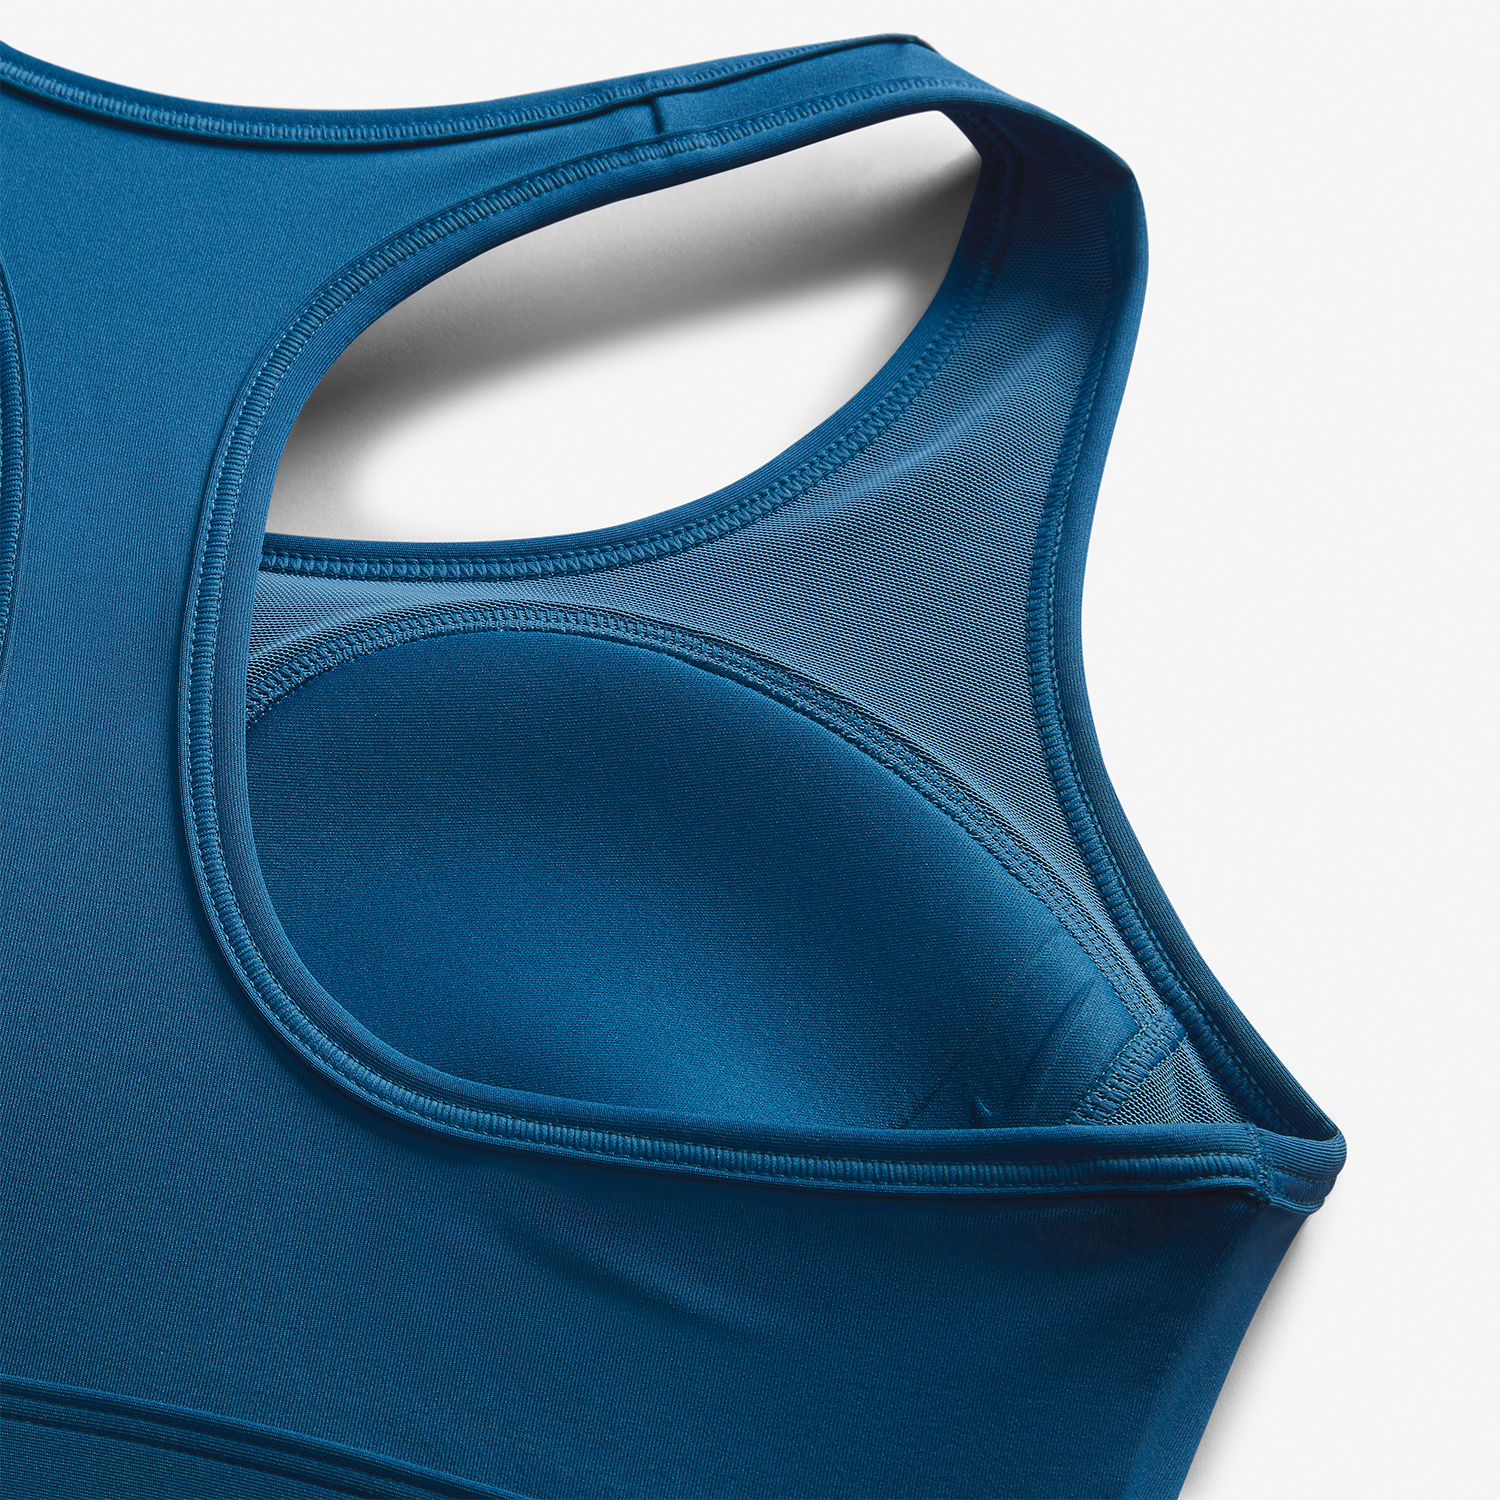 Nike Women's Swoosh Support Padded Sports Bra in Blue, DX6821-480 Blue